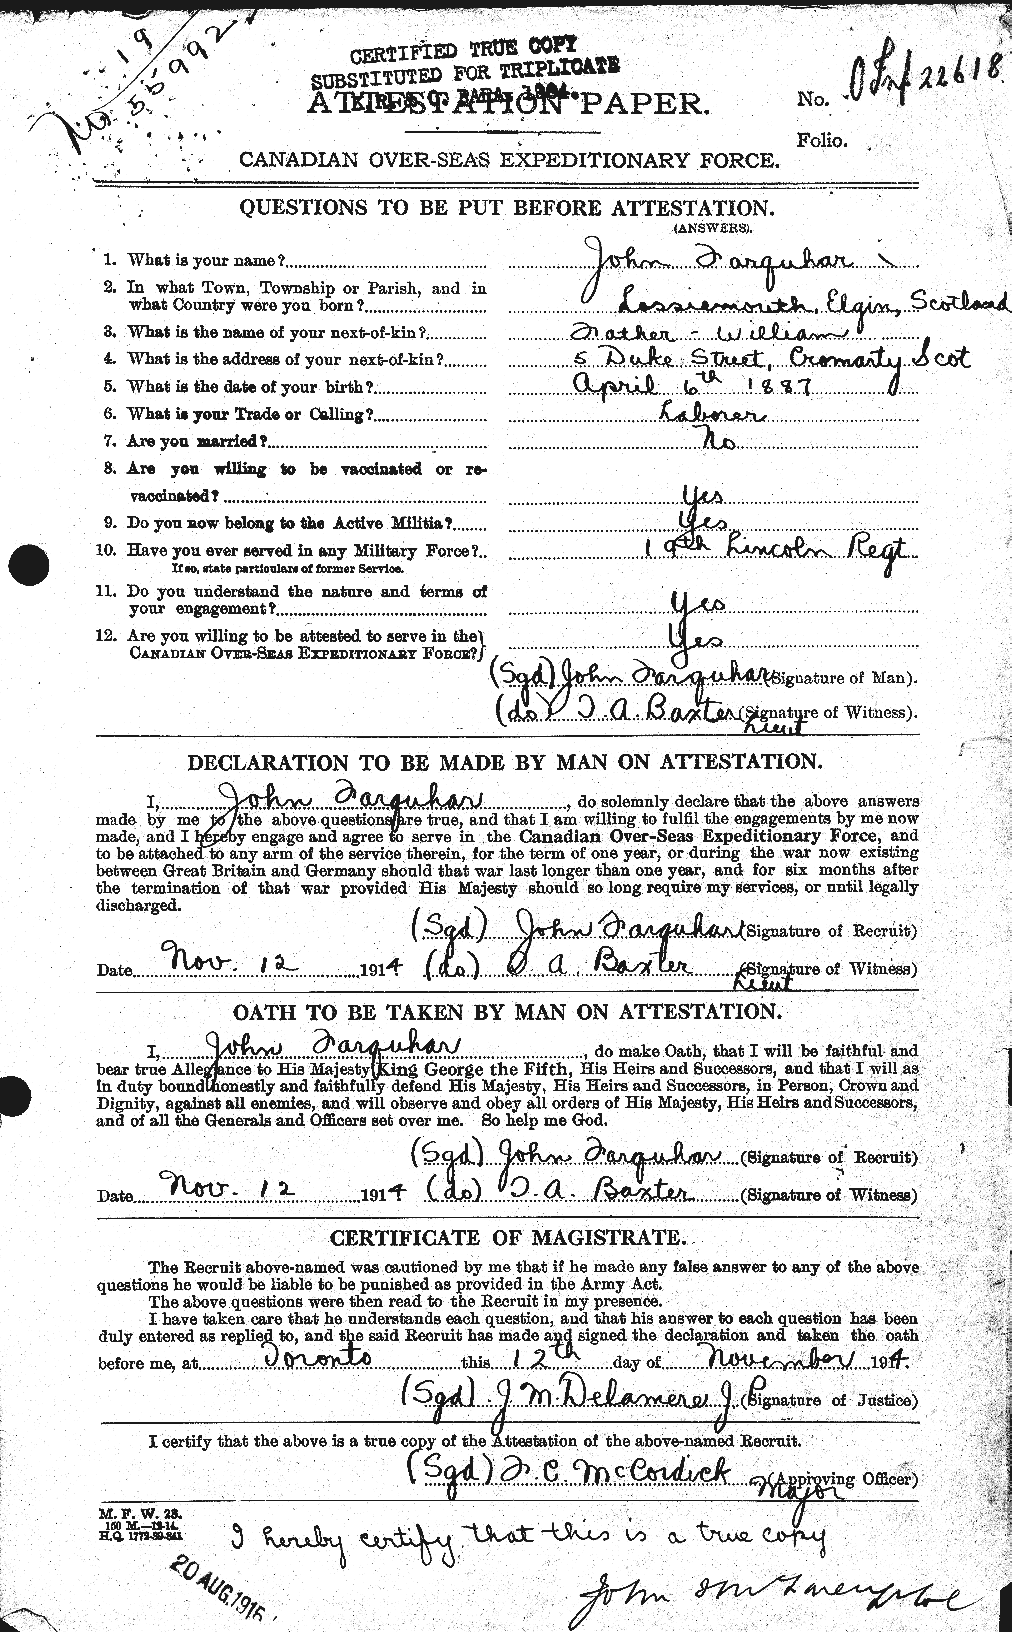 Dossiers du Personnel de la Première Guerre mondiale - CEC 318778a